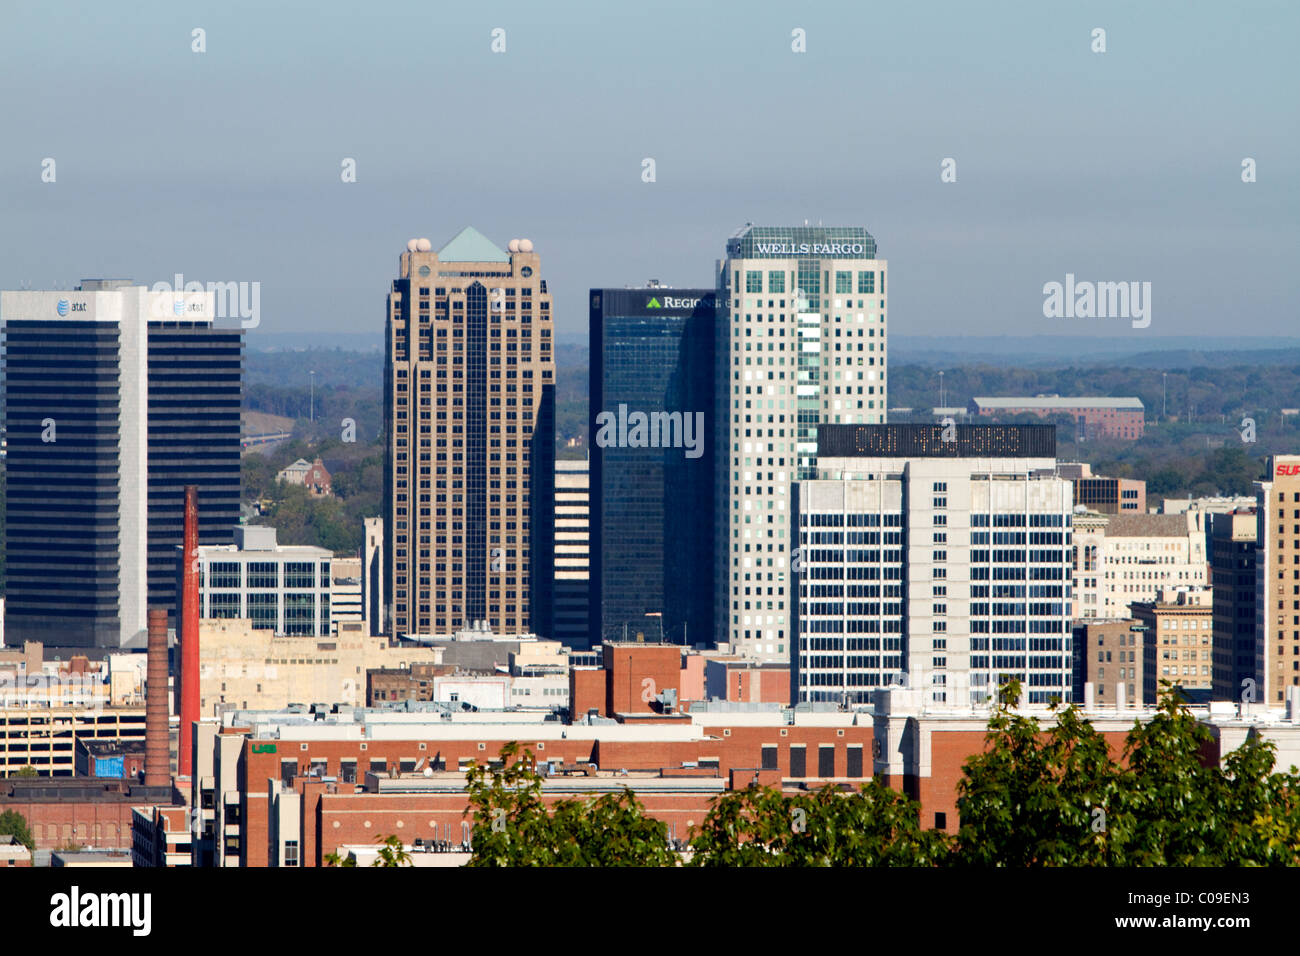 Blick auf die Stadt Birmingham entnommen Vulcan Park, Alabama, USA. Stockfoto